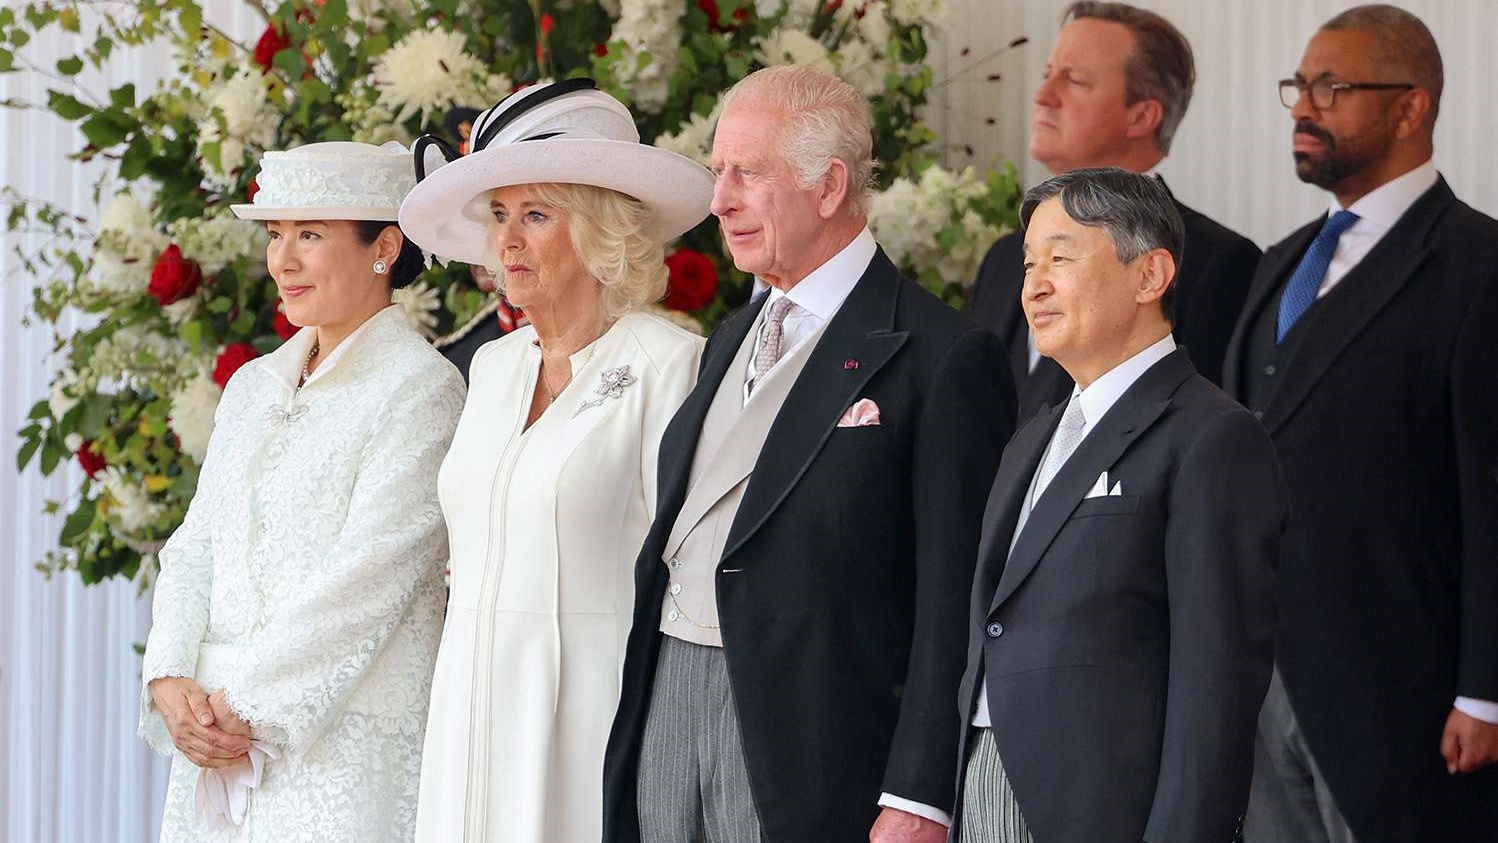 الملك تشارلز وكاميلا يتوسطان ضيفيهما أمبراطور وإمبراطورة اليابان